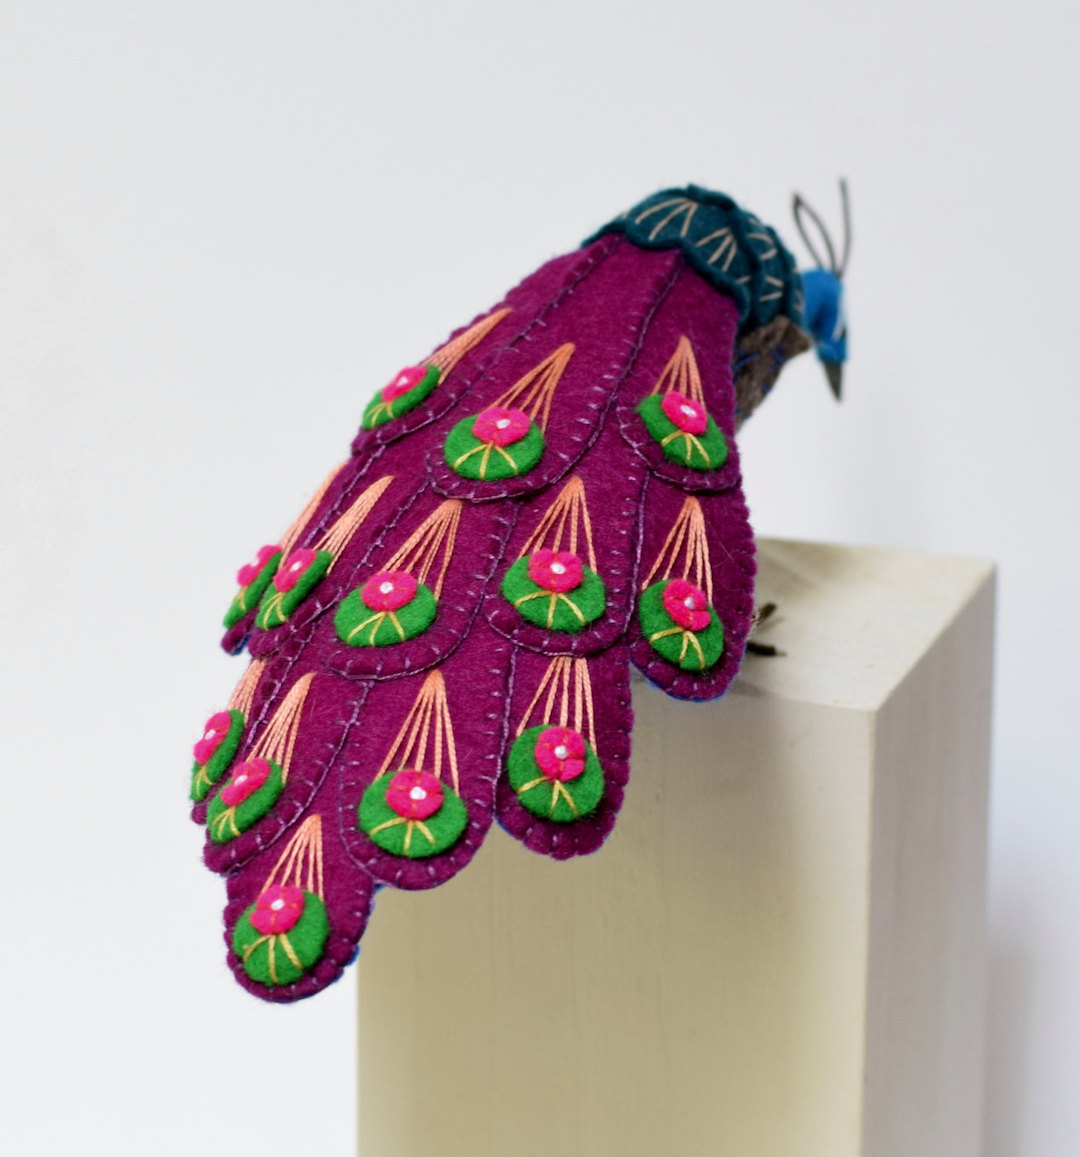 Jill Ffrench felt bird sculptures